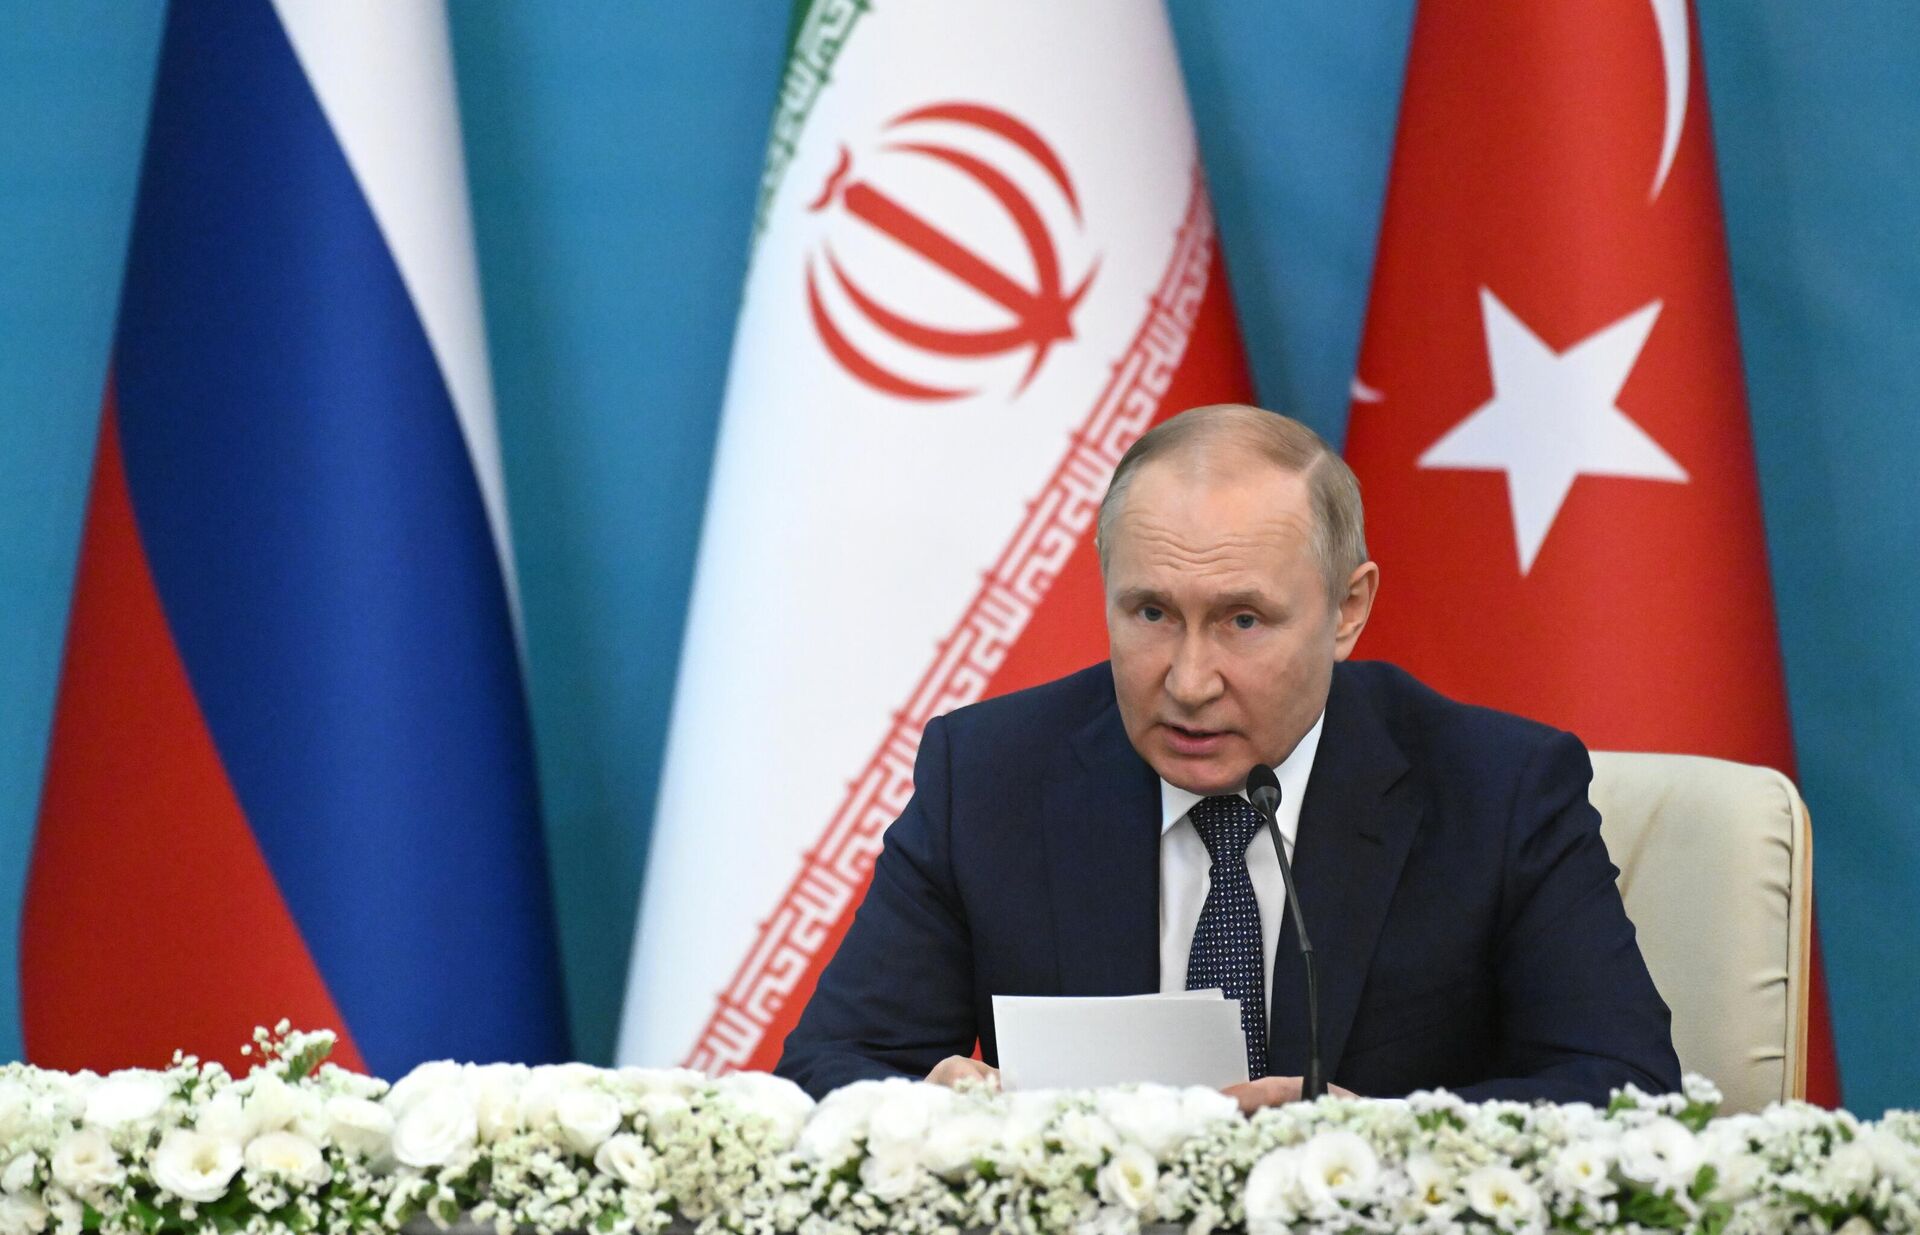 O presidente da Rússia, Vladimir Putin, fala durante encontro com os presidentes do Irã, Ebrahim Raisi, e da Turquia, Recep Tayyip Erdogan, em Teerã, 19 de julho de 2022 - Sputnik Brasil, 1920, 19.07.2022